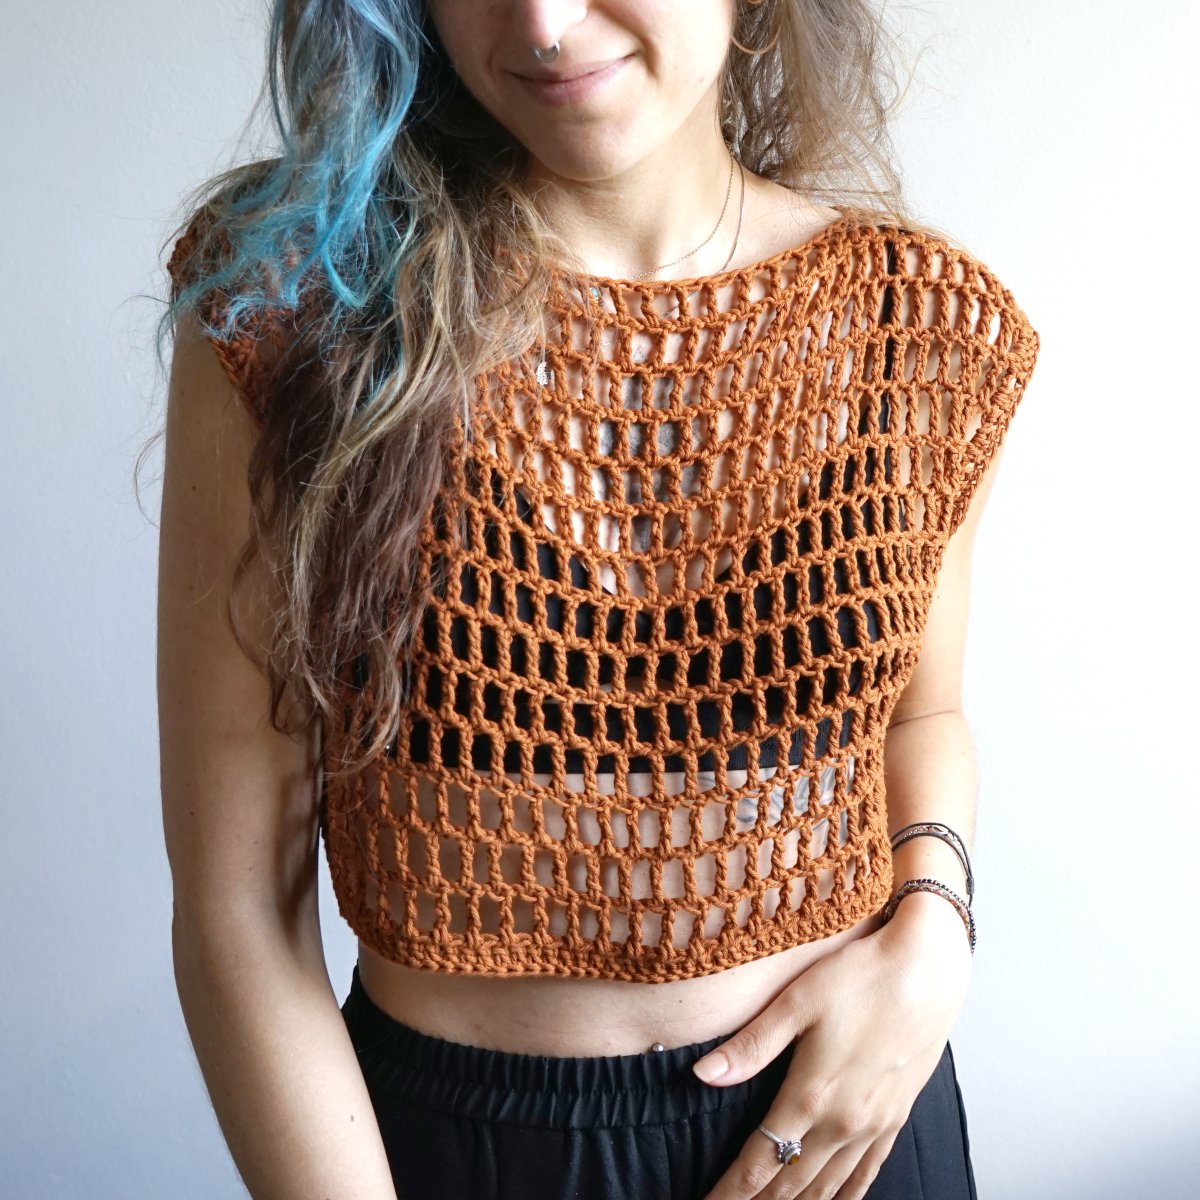 Tutorial] Crochet Mesh Crop Top and Pants